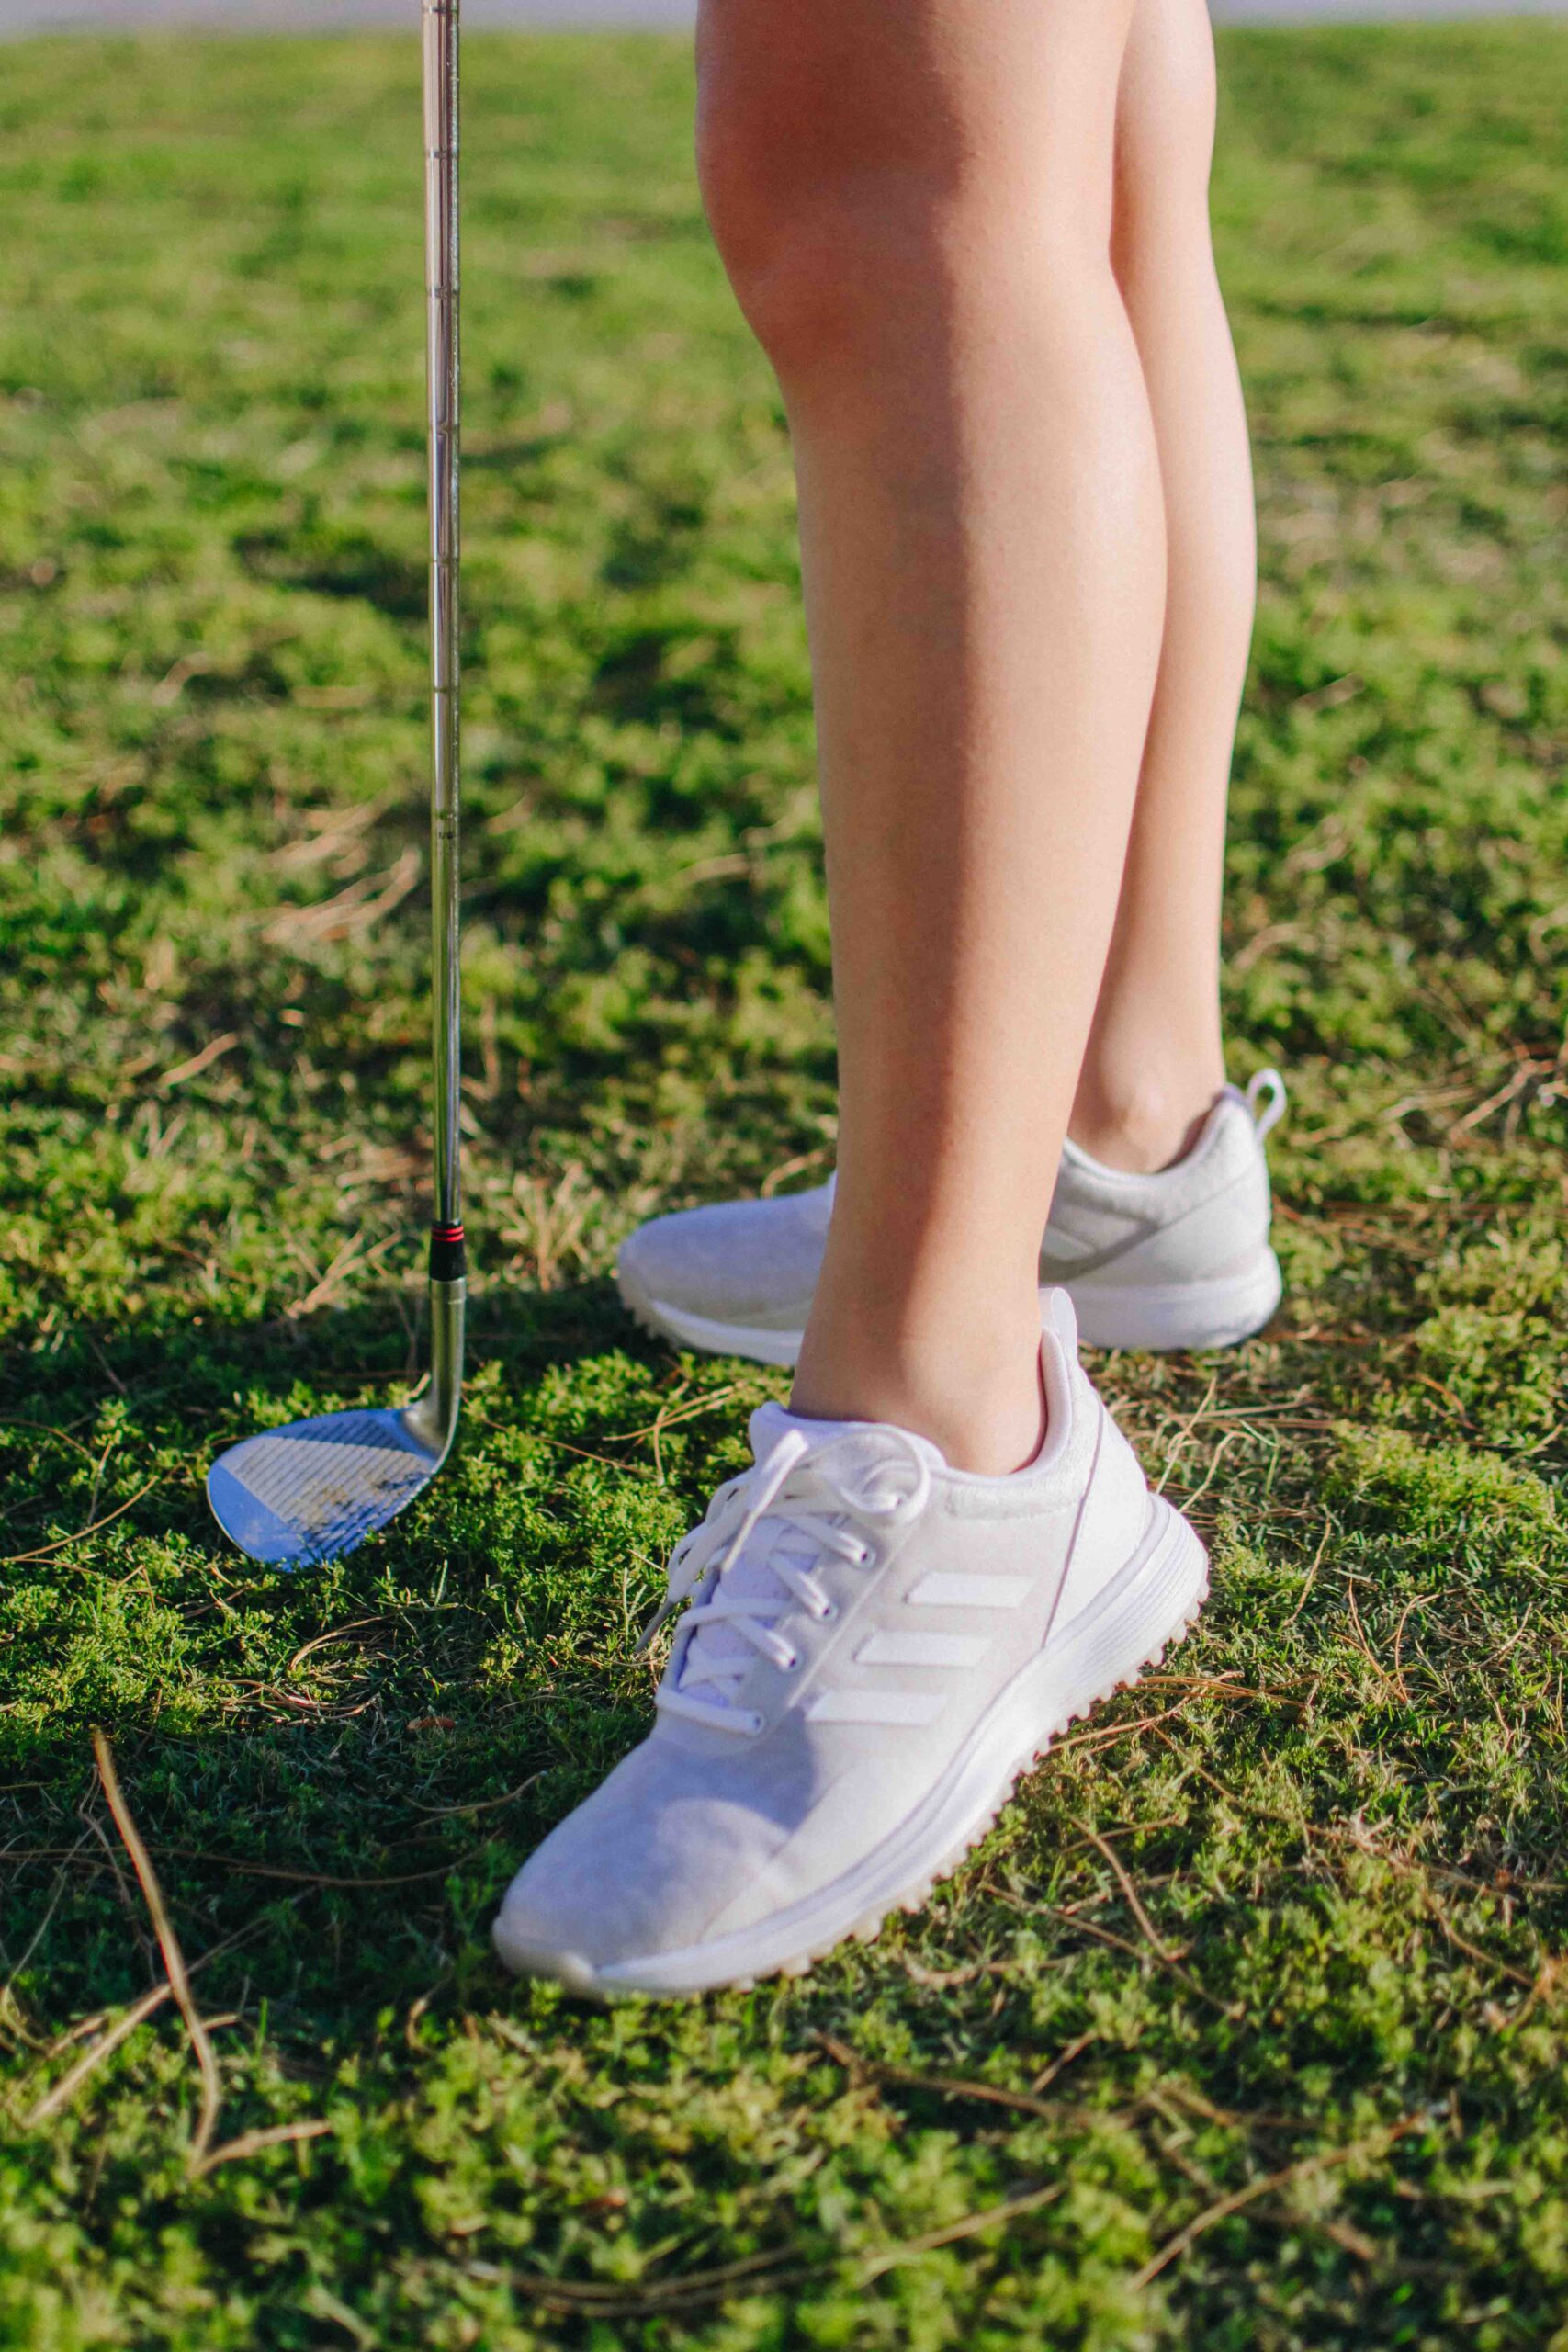 Demi Bang wearing adidas golfing shoes for women.